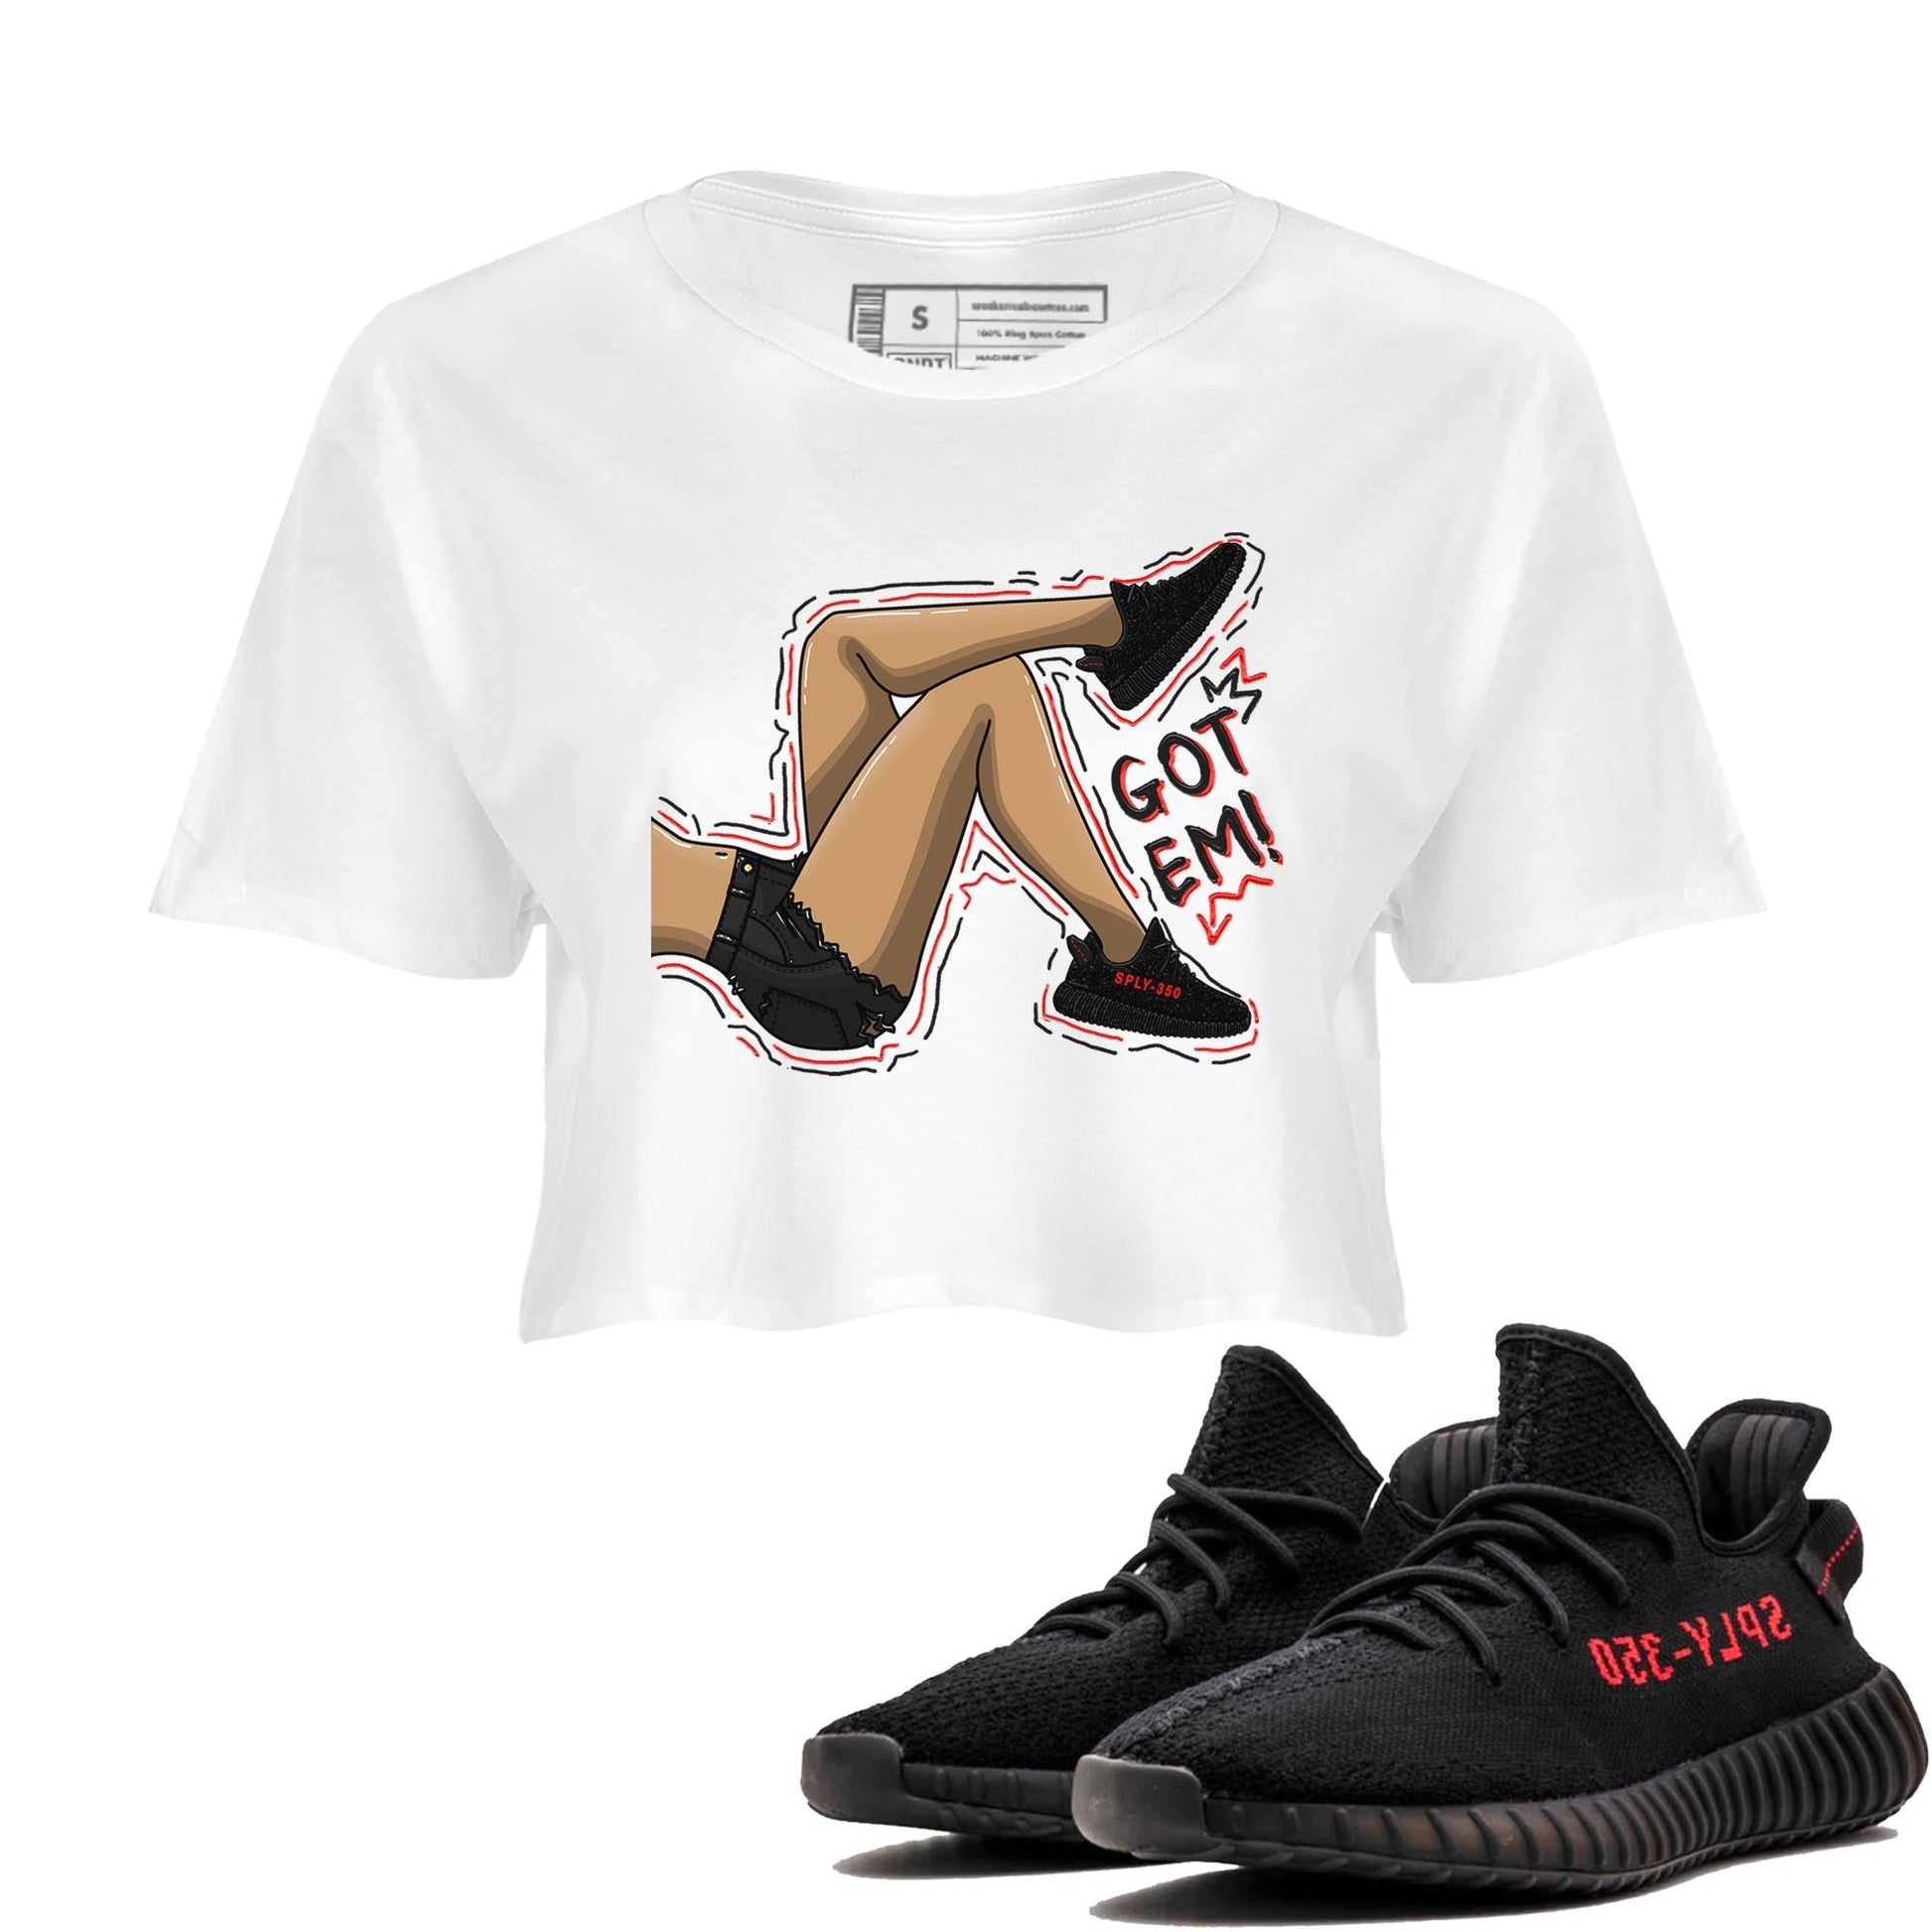 Yeezy 350 Bred shirt to match jordans Got Em Legs Streetwear Sneaker Shirt Yeezy Boost 350 V2 Bred Drip Gear Zone Sneaker Matching Clothing White 1 Crop T-Shirt